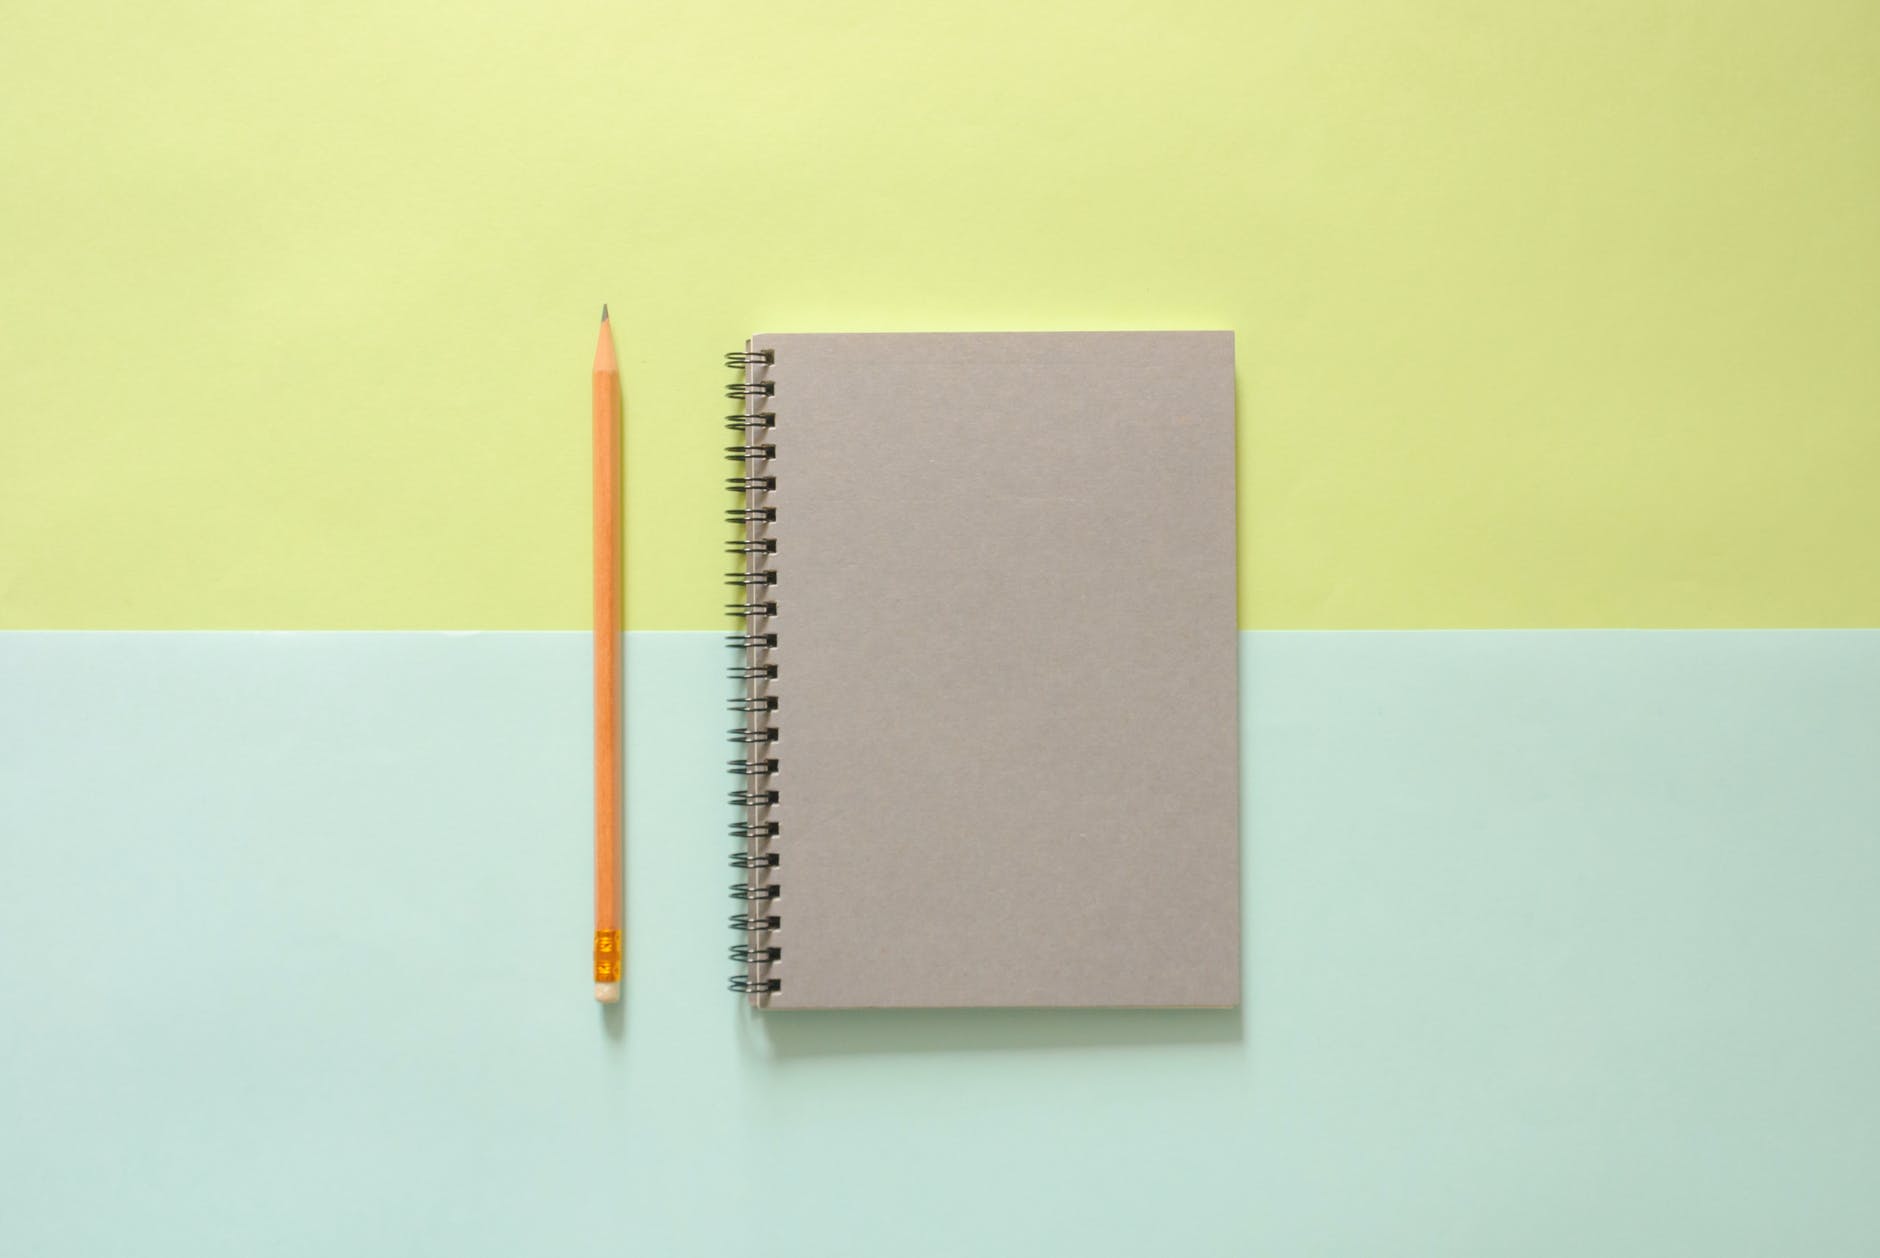 white spiral notebook beside orange pencil